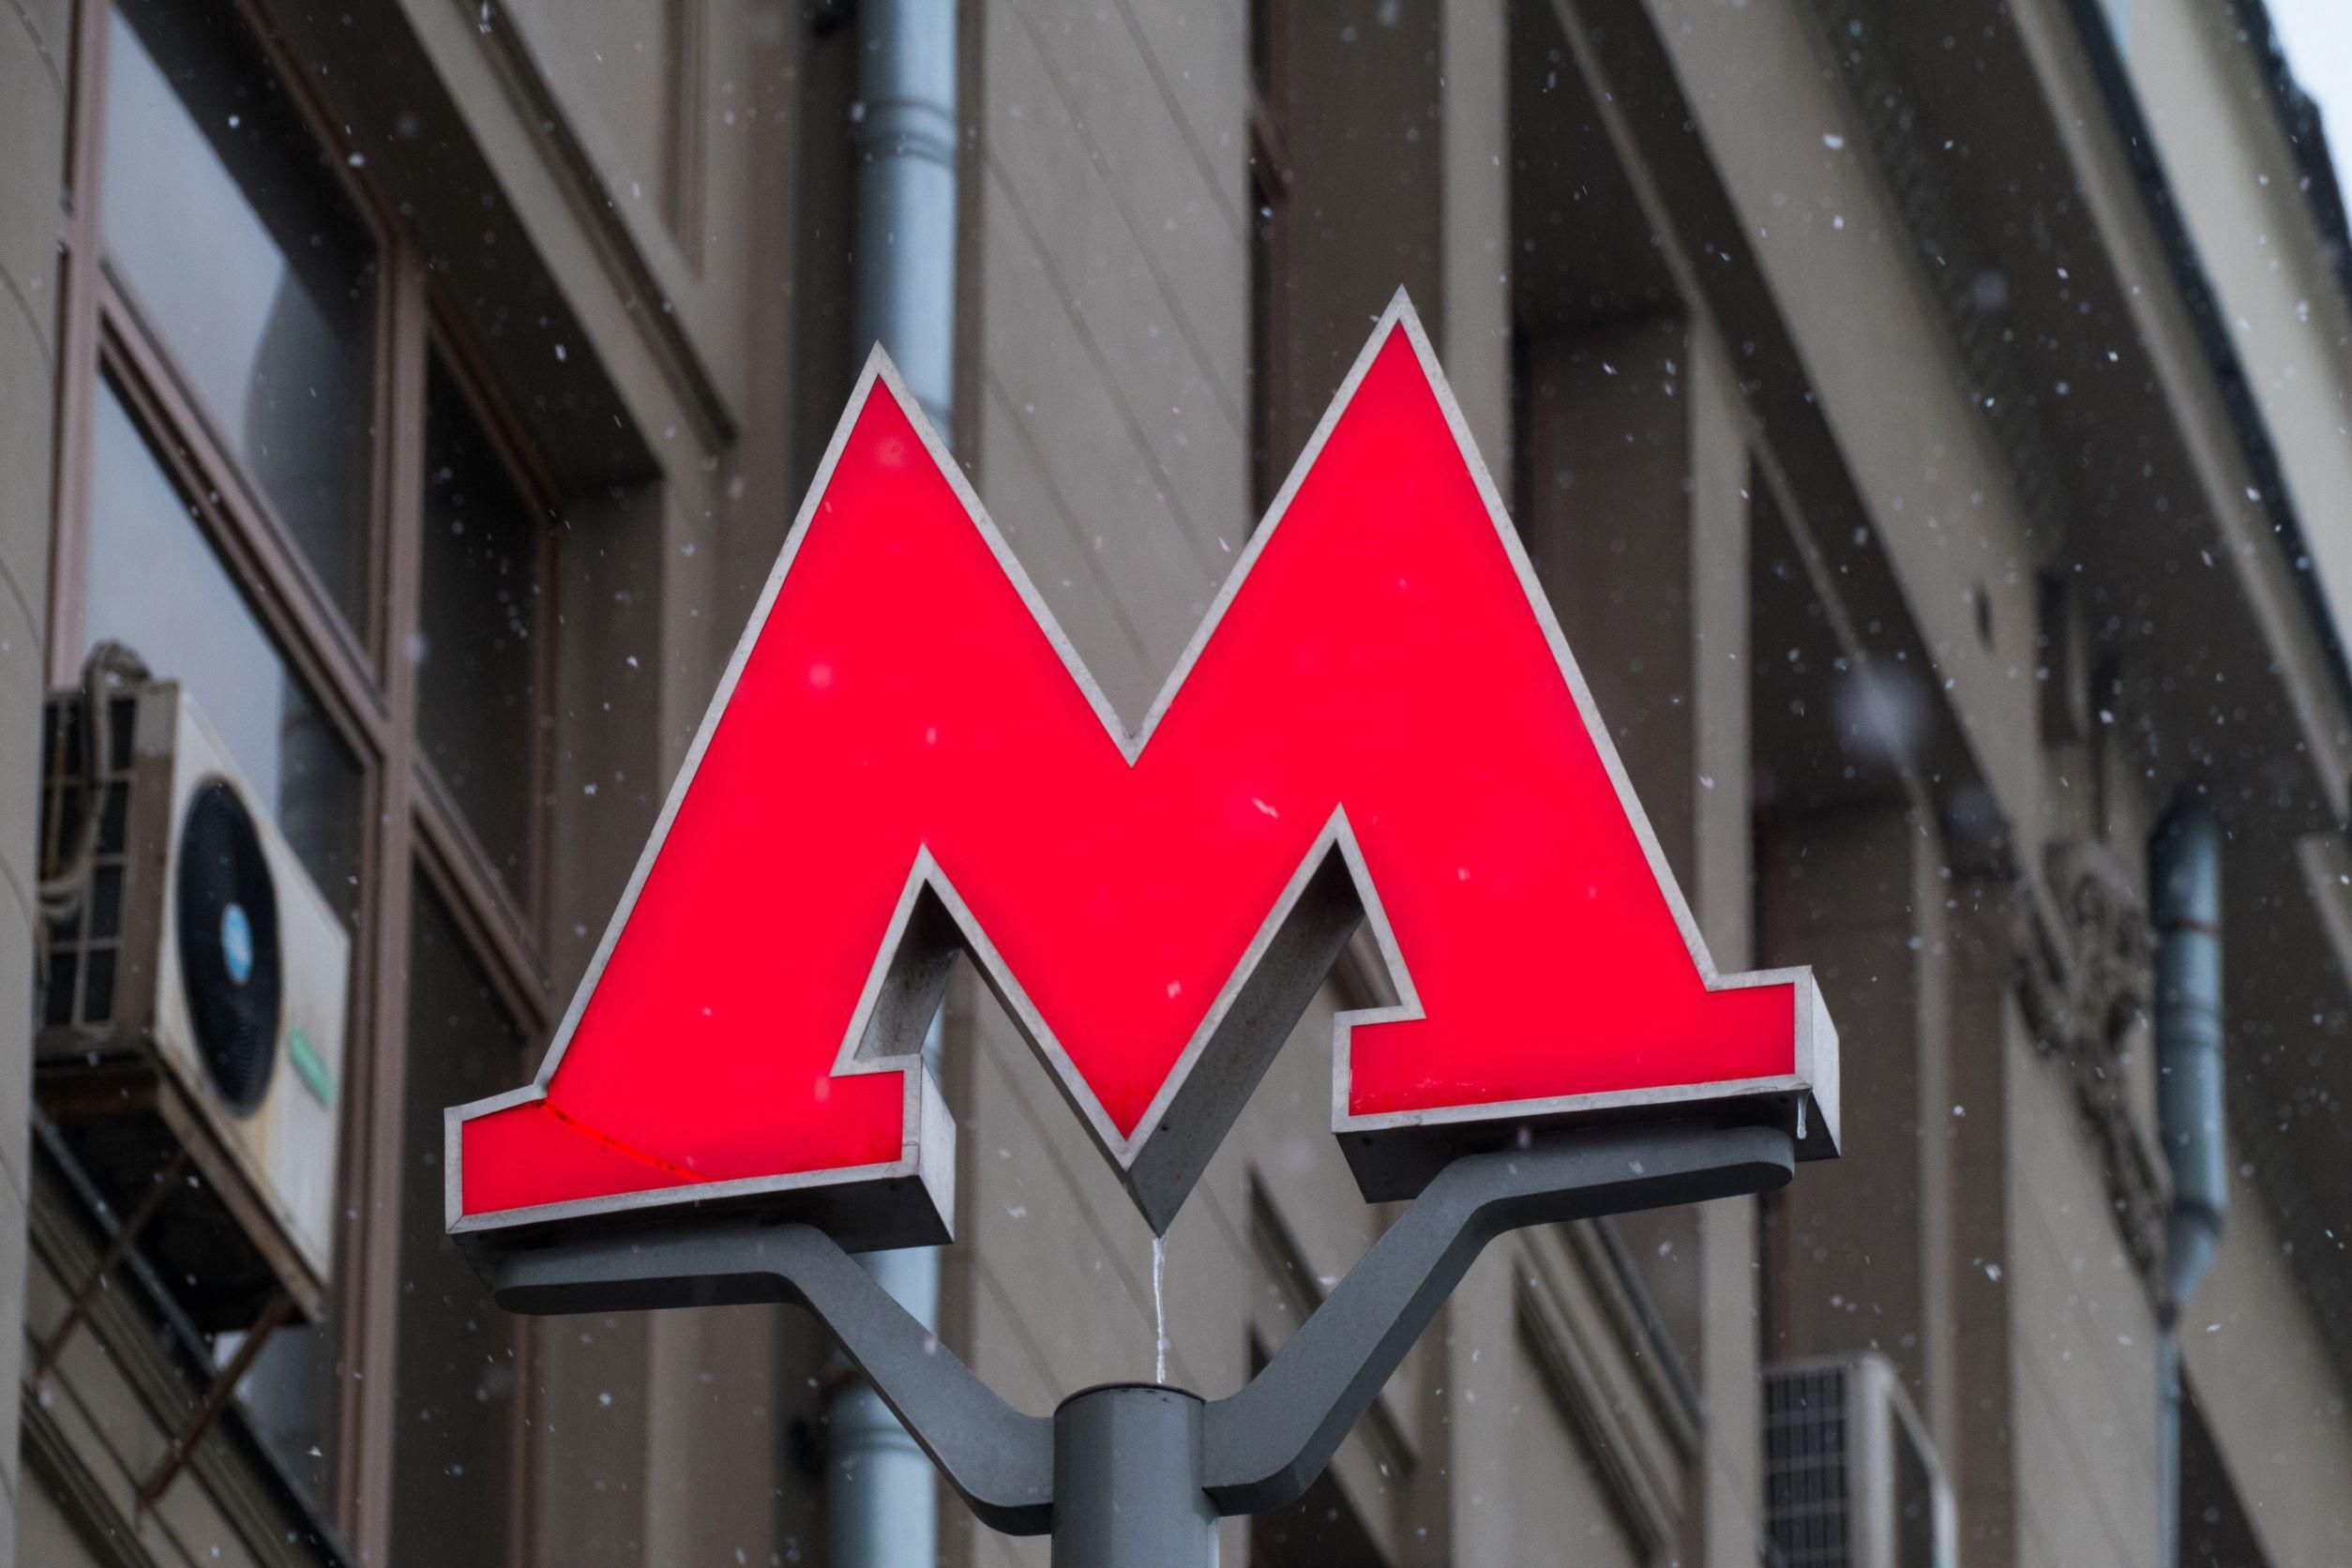 A moszkkvai metró jele a nagy M betű